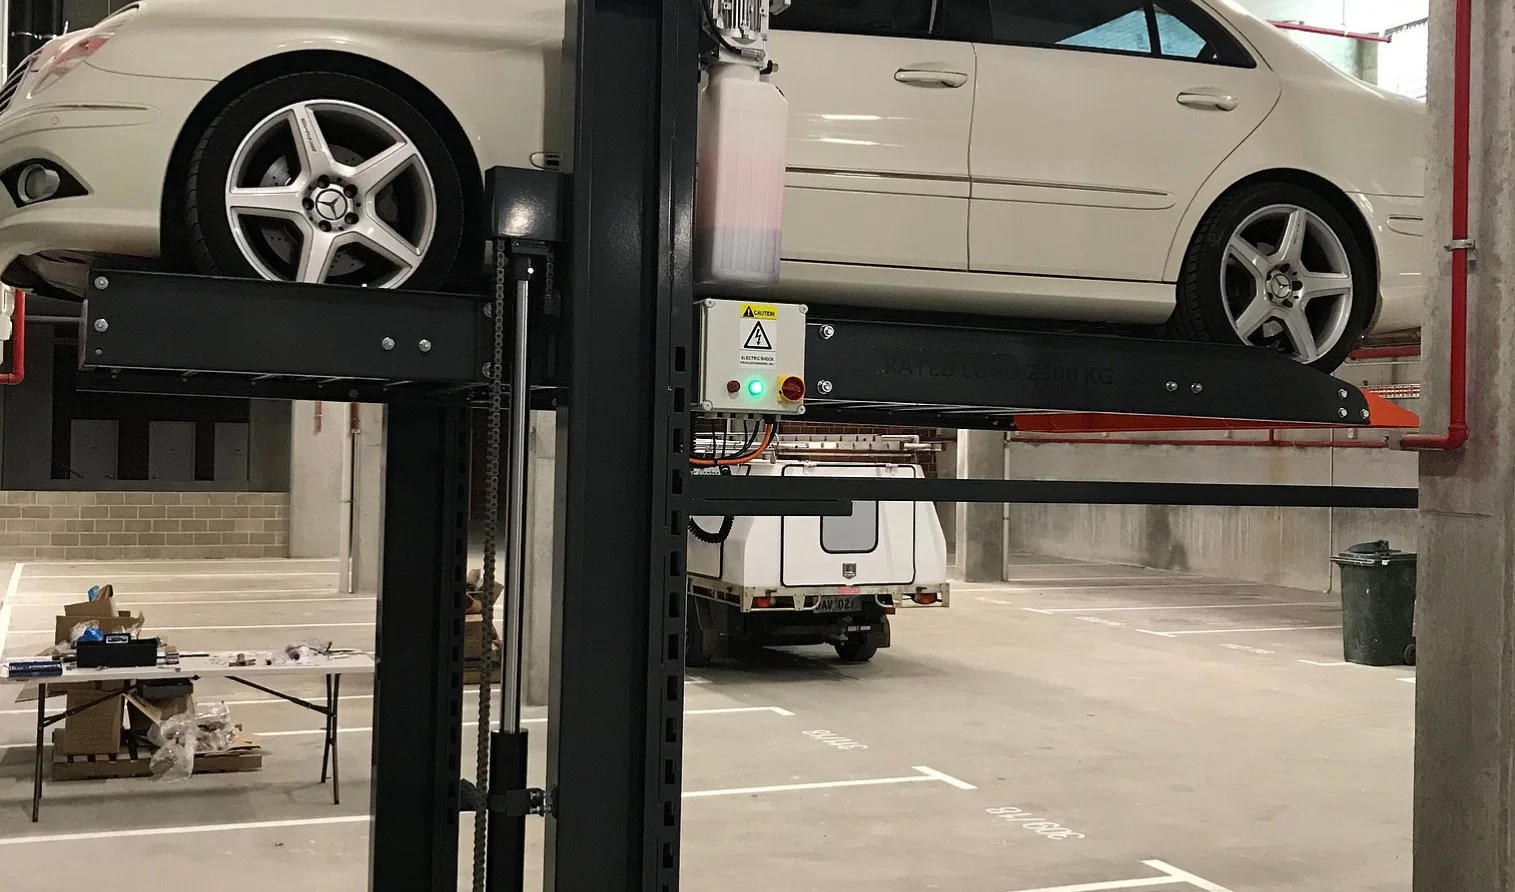 Multilayer Double Stacke Valet 2 Level Car Parking Elevator Garage Lift